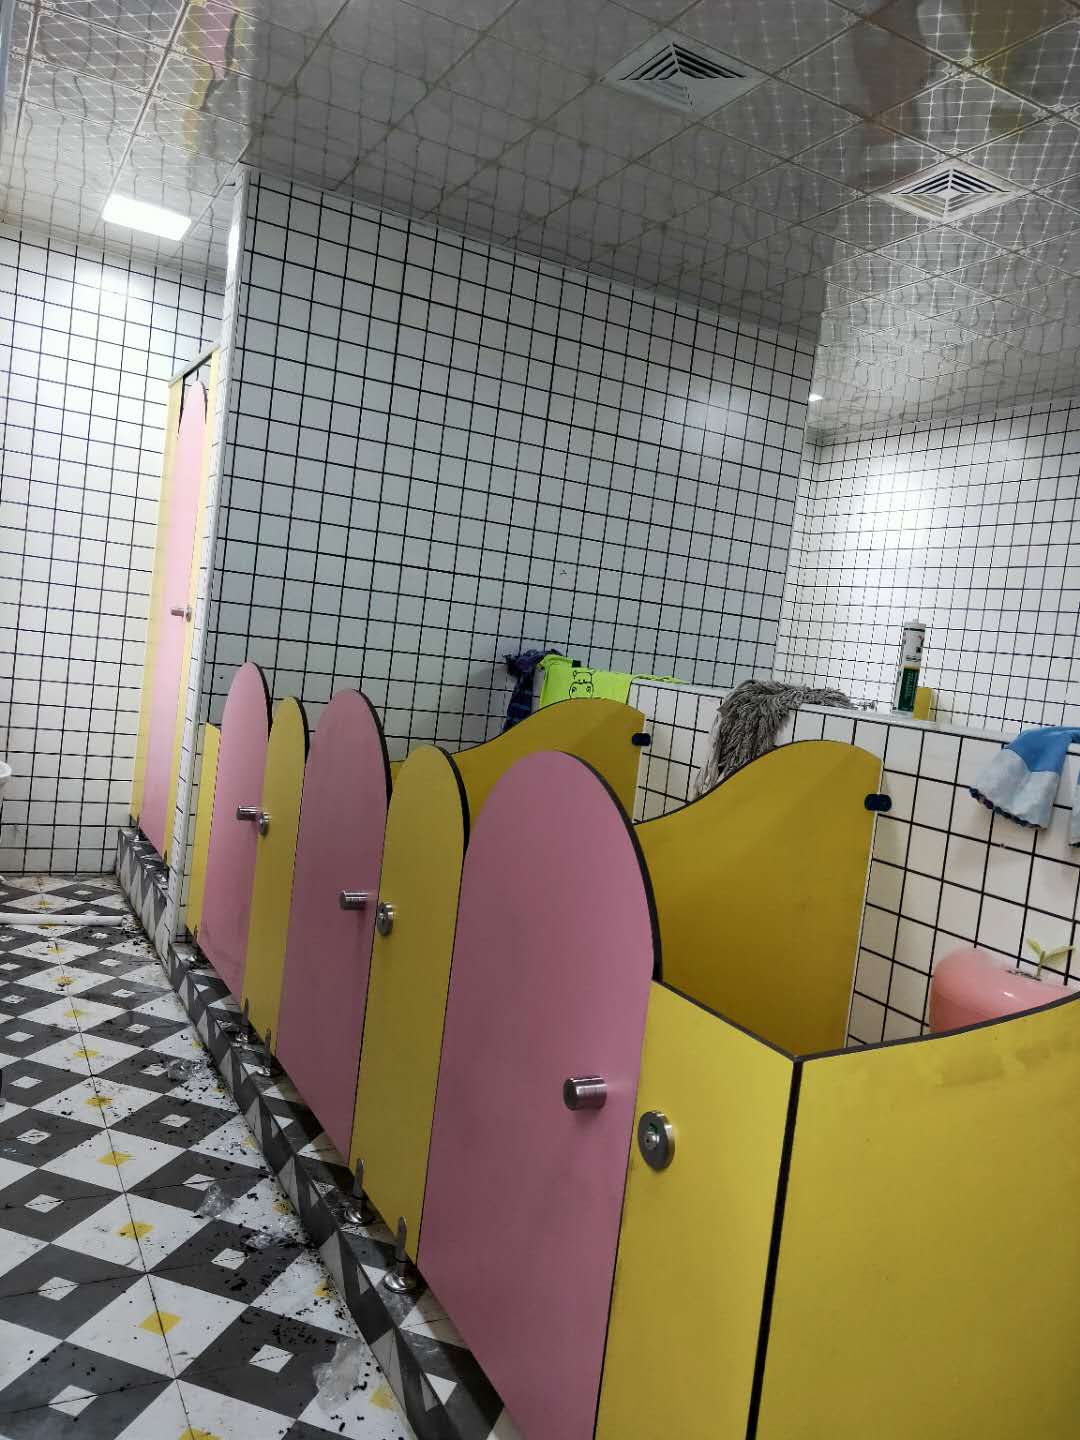 幼儿园卫生间